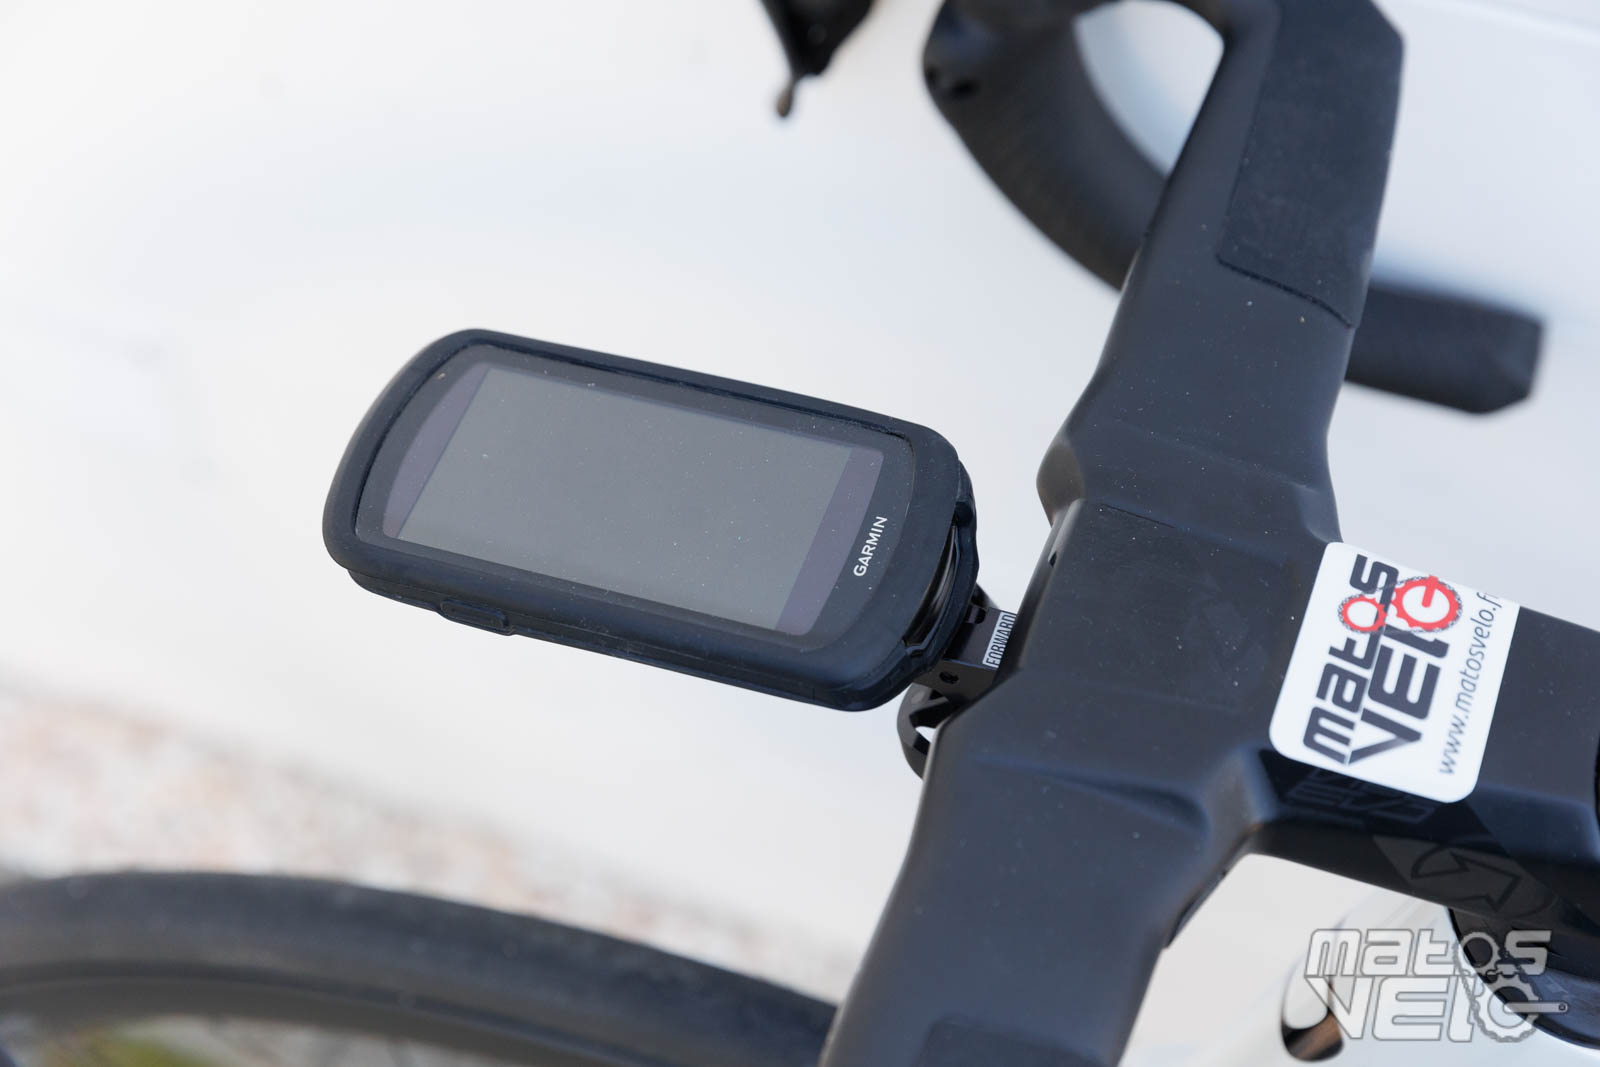 Test du support Rotor pour Garmin et GoPro - Matos vélo